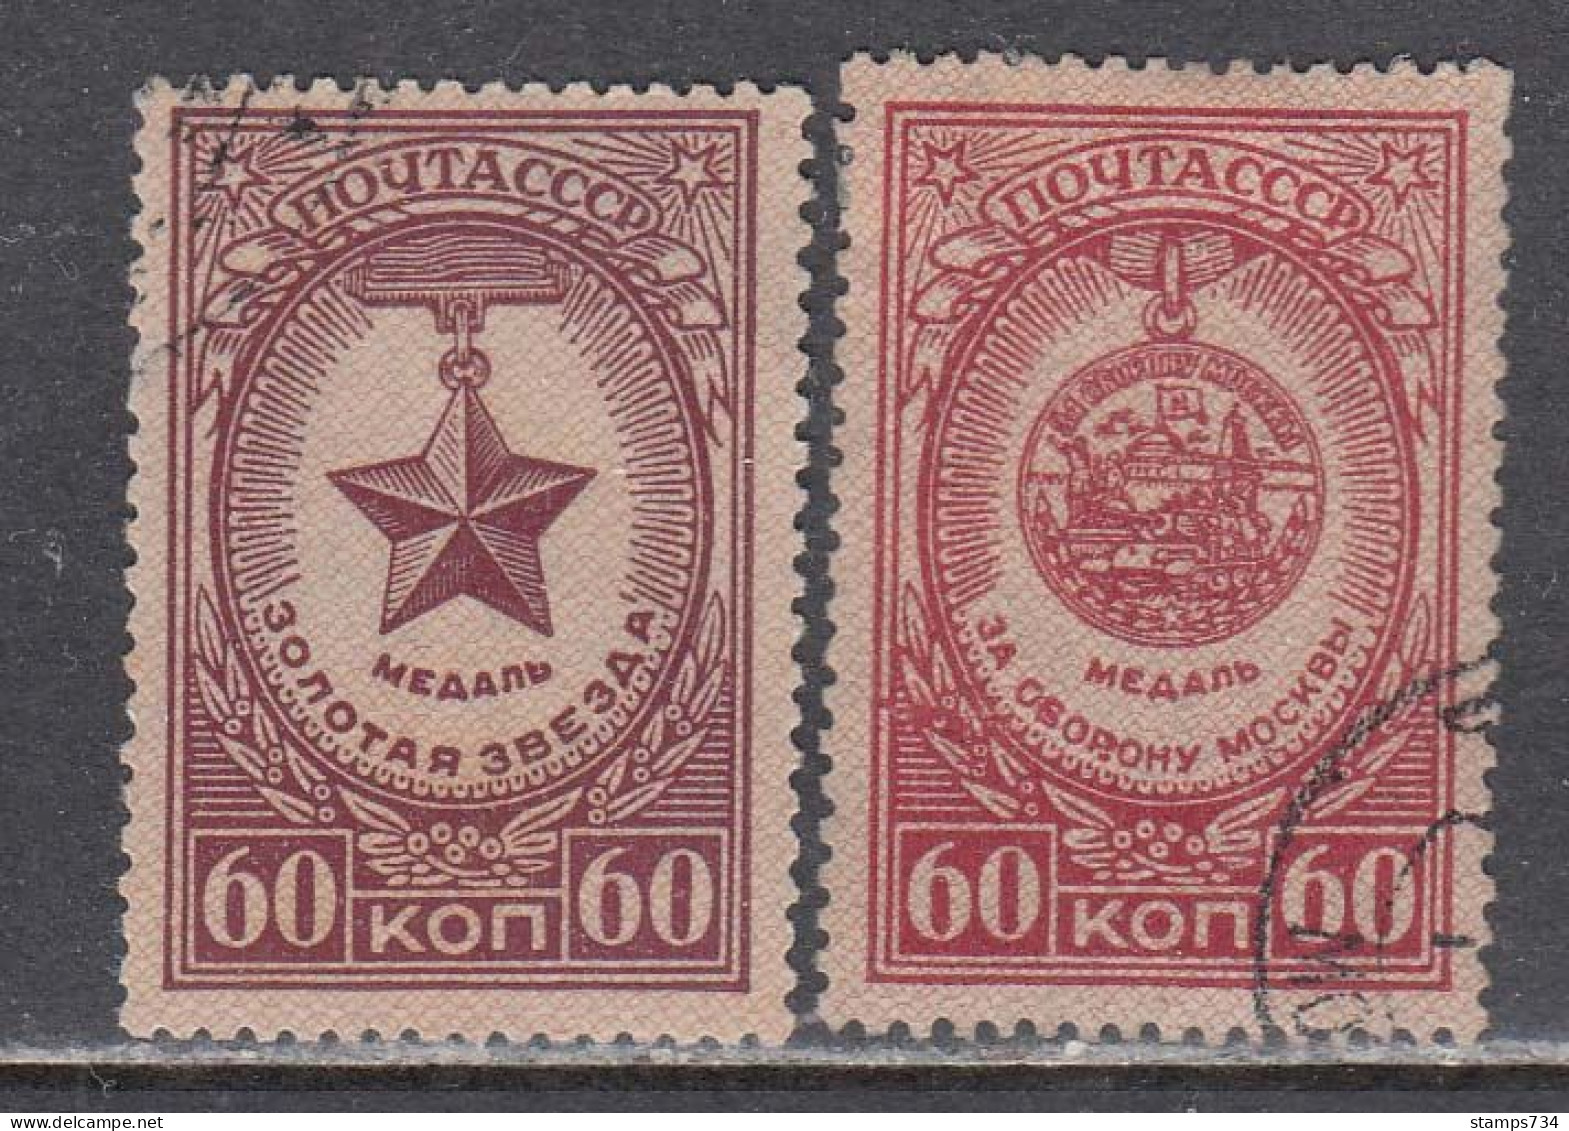 USSR 1946 - Orden Und Medaillen, Mi-Nr. 1029A, 1038A, Used - Usati